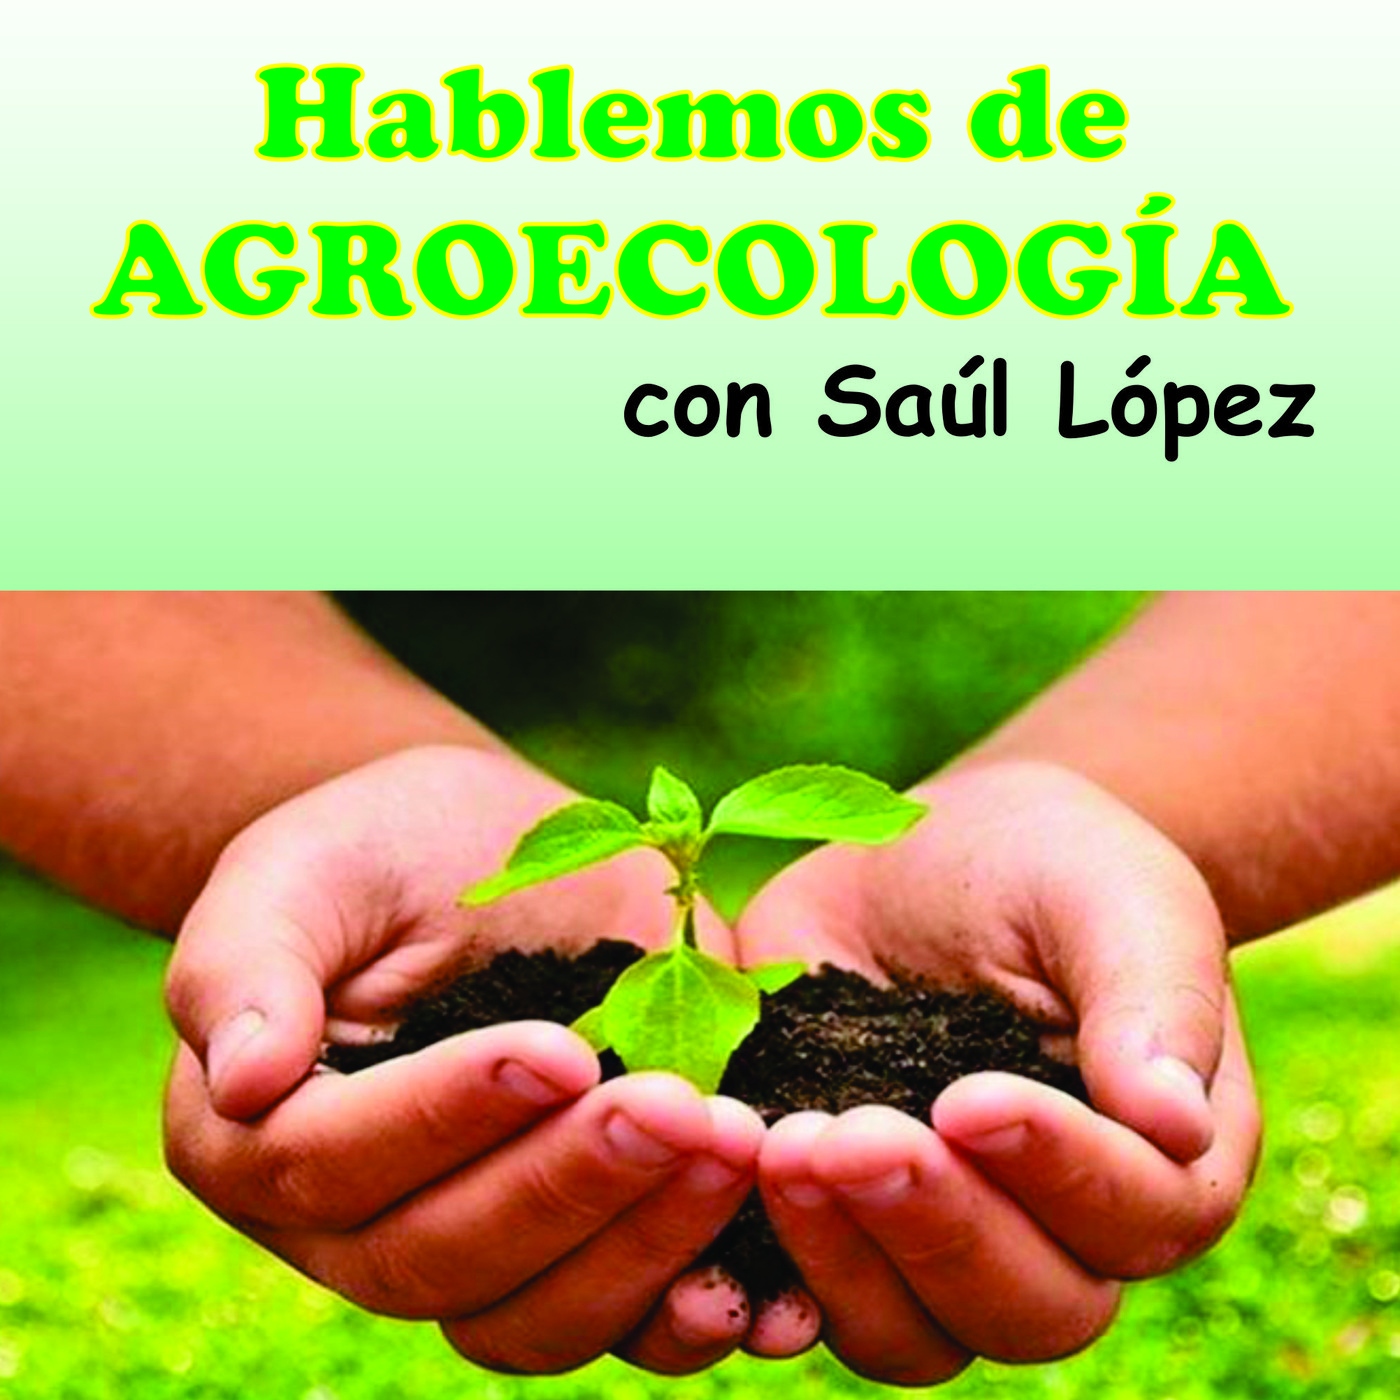 Hablemos de Agro ecología